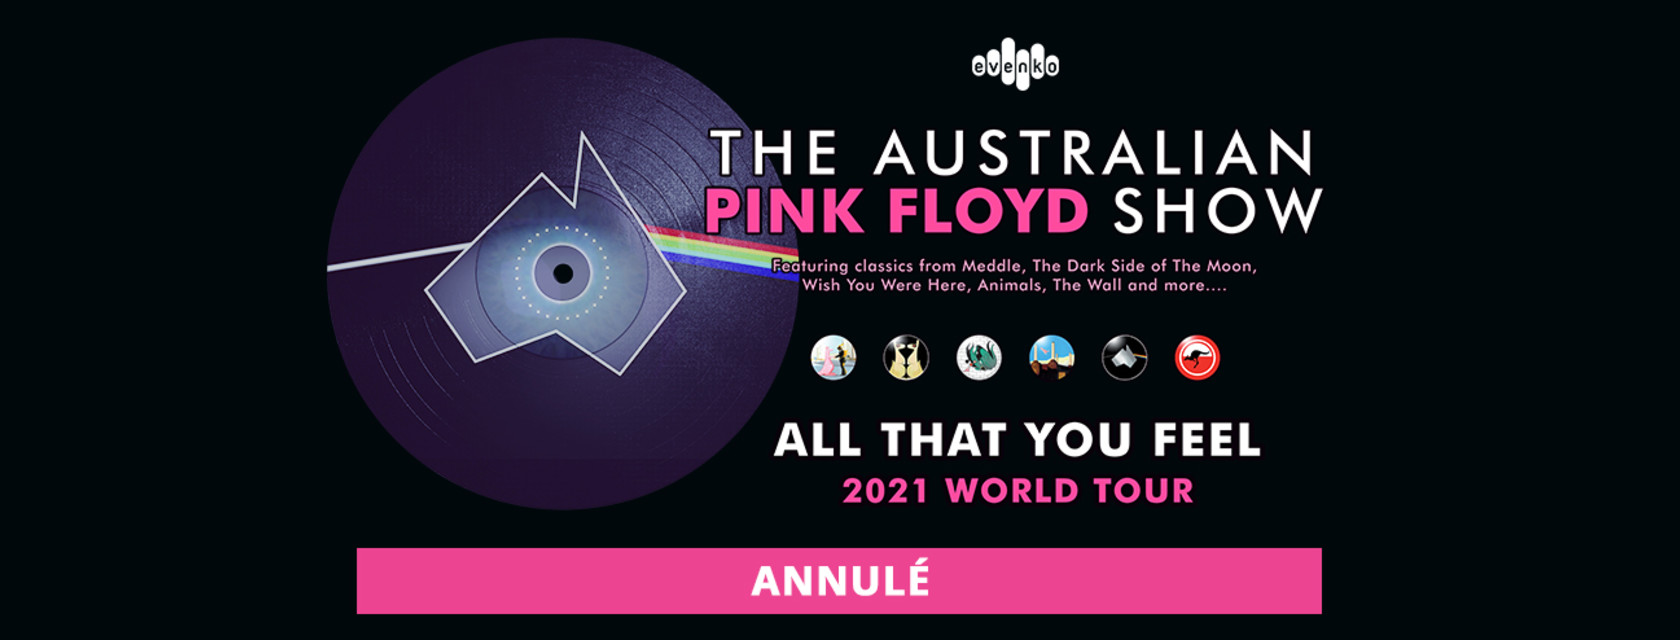 The Australian Pink Floyd Show annule sa tournée nord-américaine :  le spectacle du 19 septembre à l’Amphithéâtre Cogeco annulé